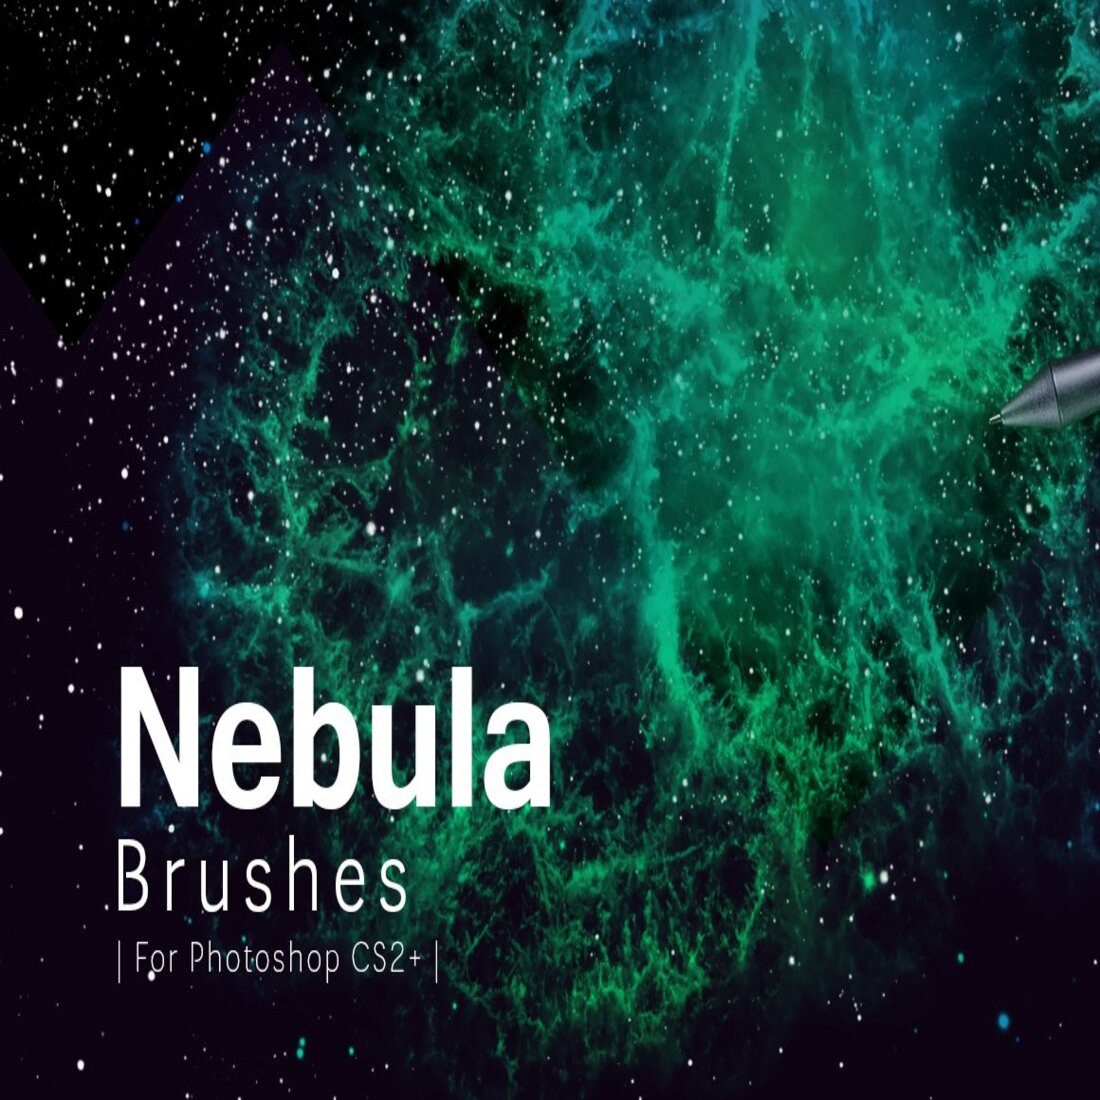 Nebula Photoshop Brushes cover.